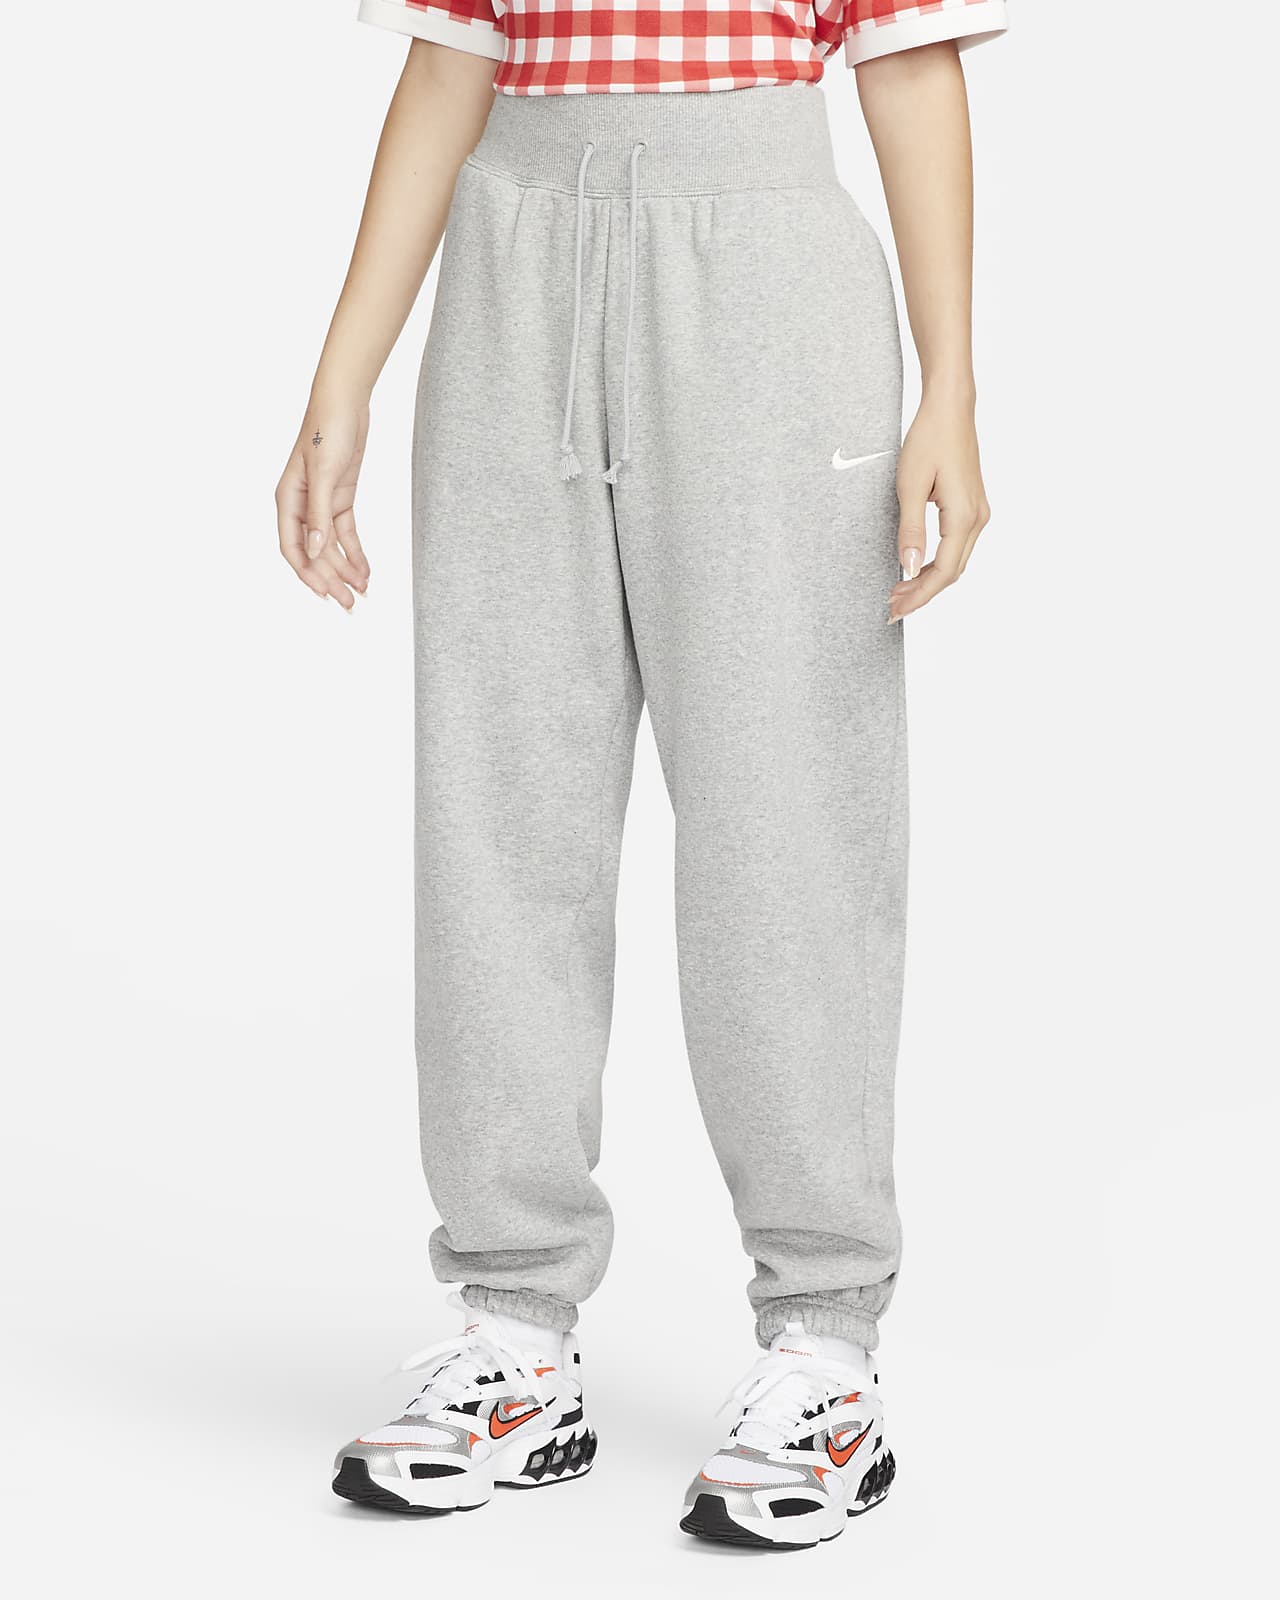 Nike Sportswear Phoenix Fleece Women's High-Waisted Oversized Sweatpants